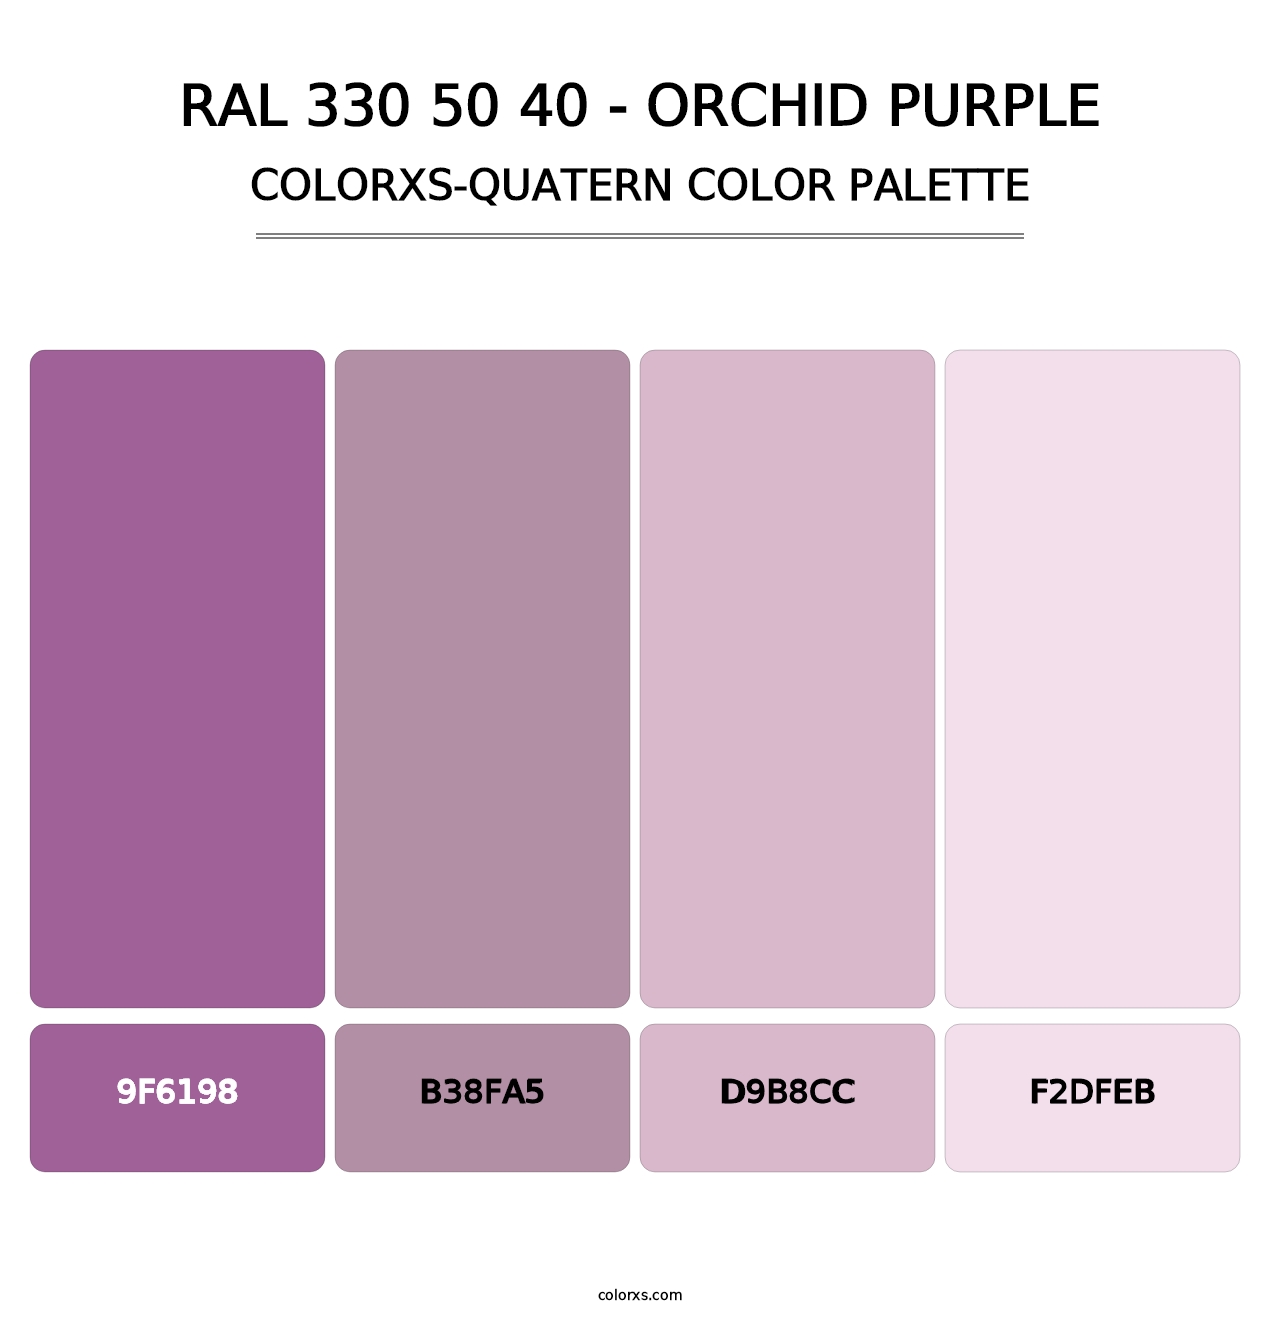 RAL 330 50 40 - Orchid Purple - Colorxs Quatern Palette